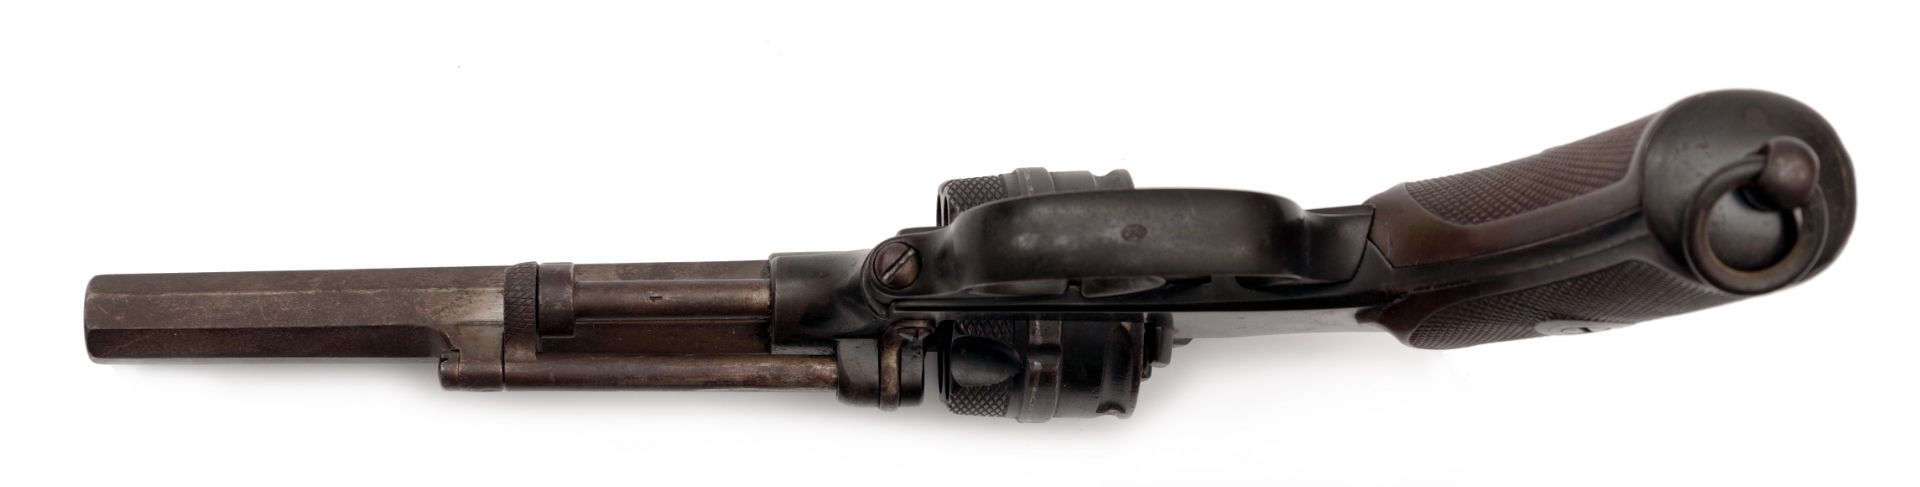 Schweizer Kavallerie-Revolver Modell 1878 - Bild 4 aus 5